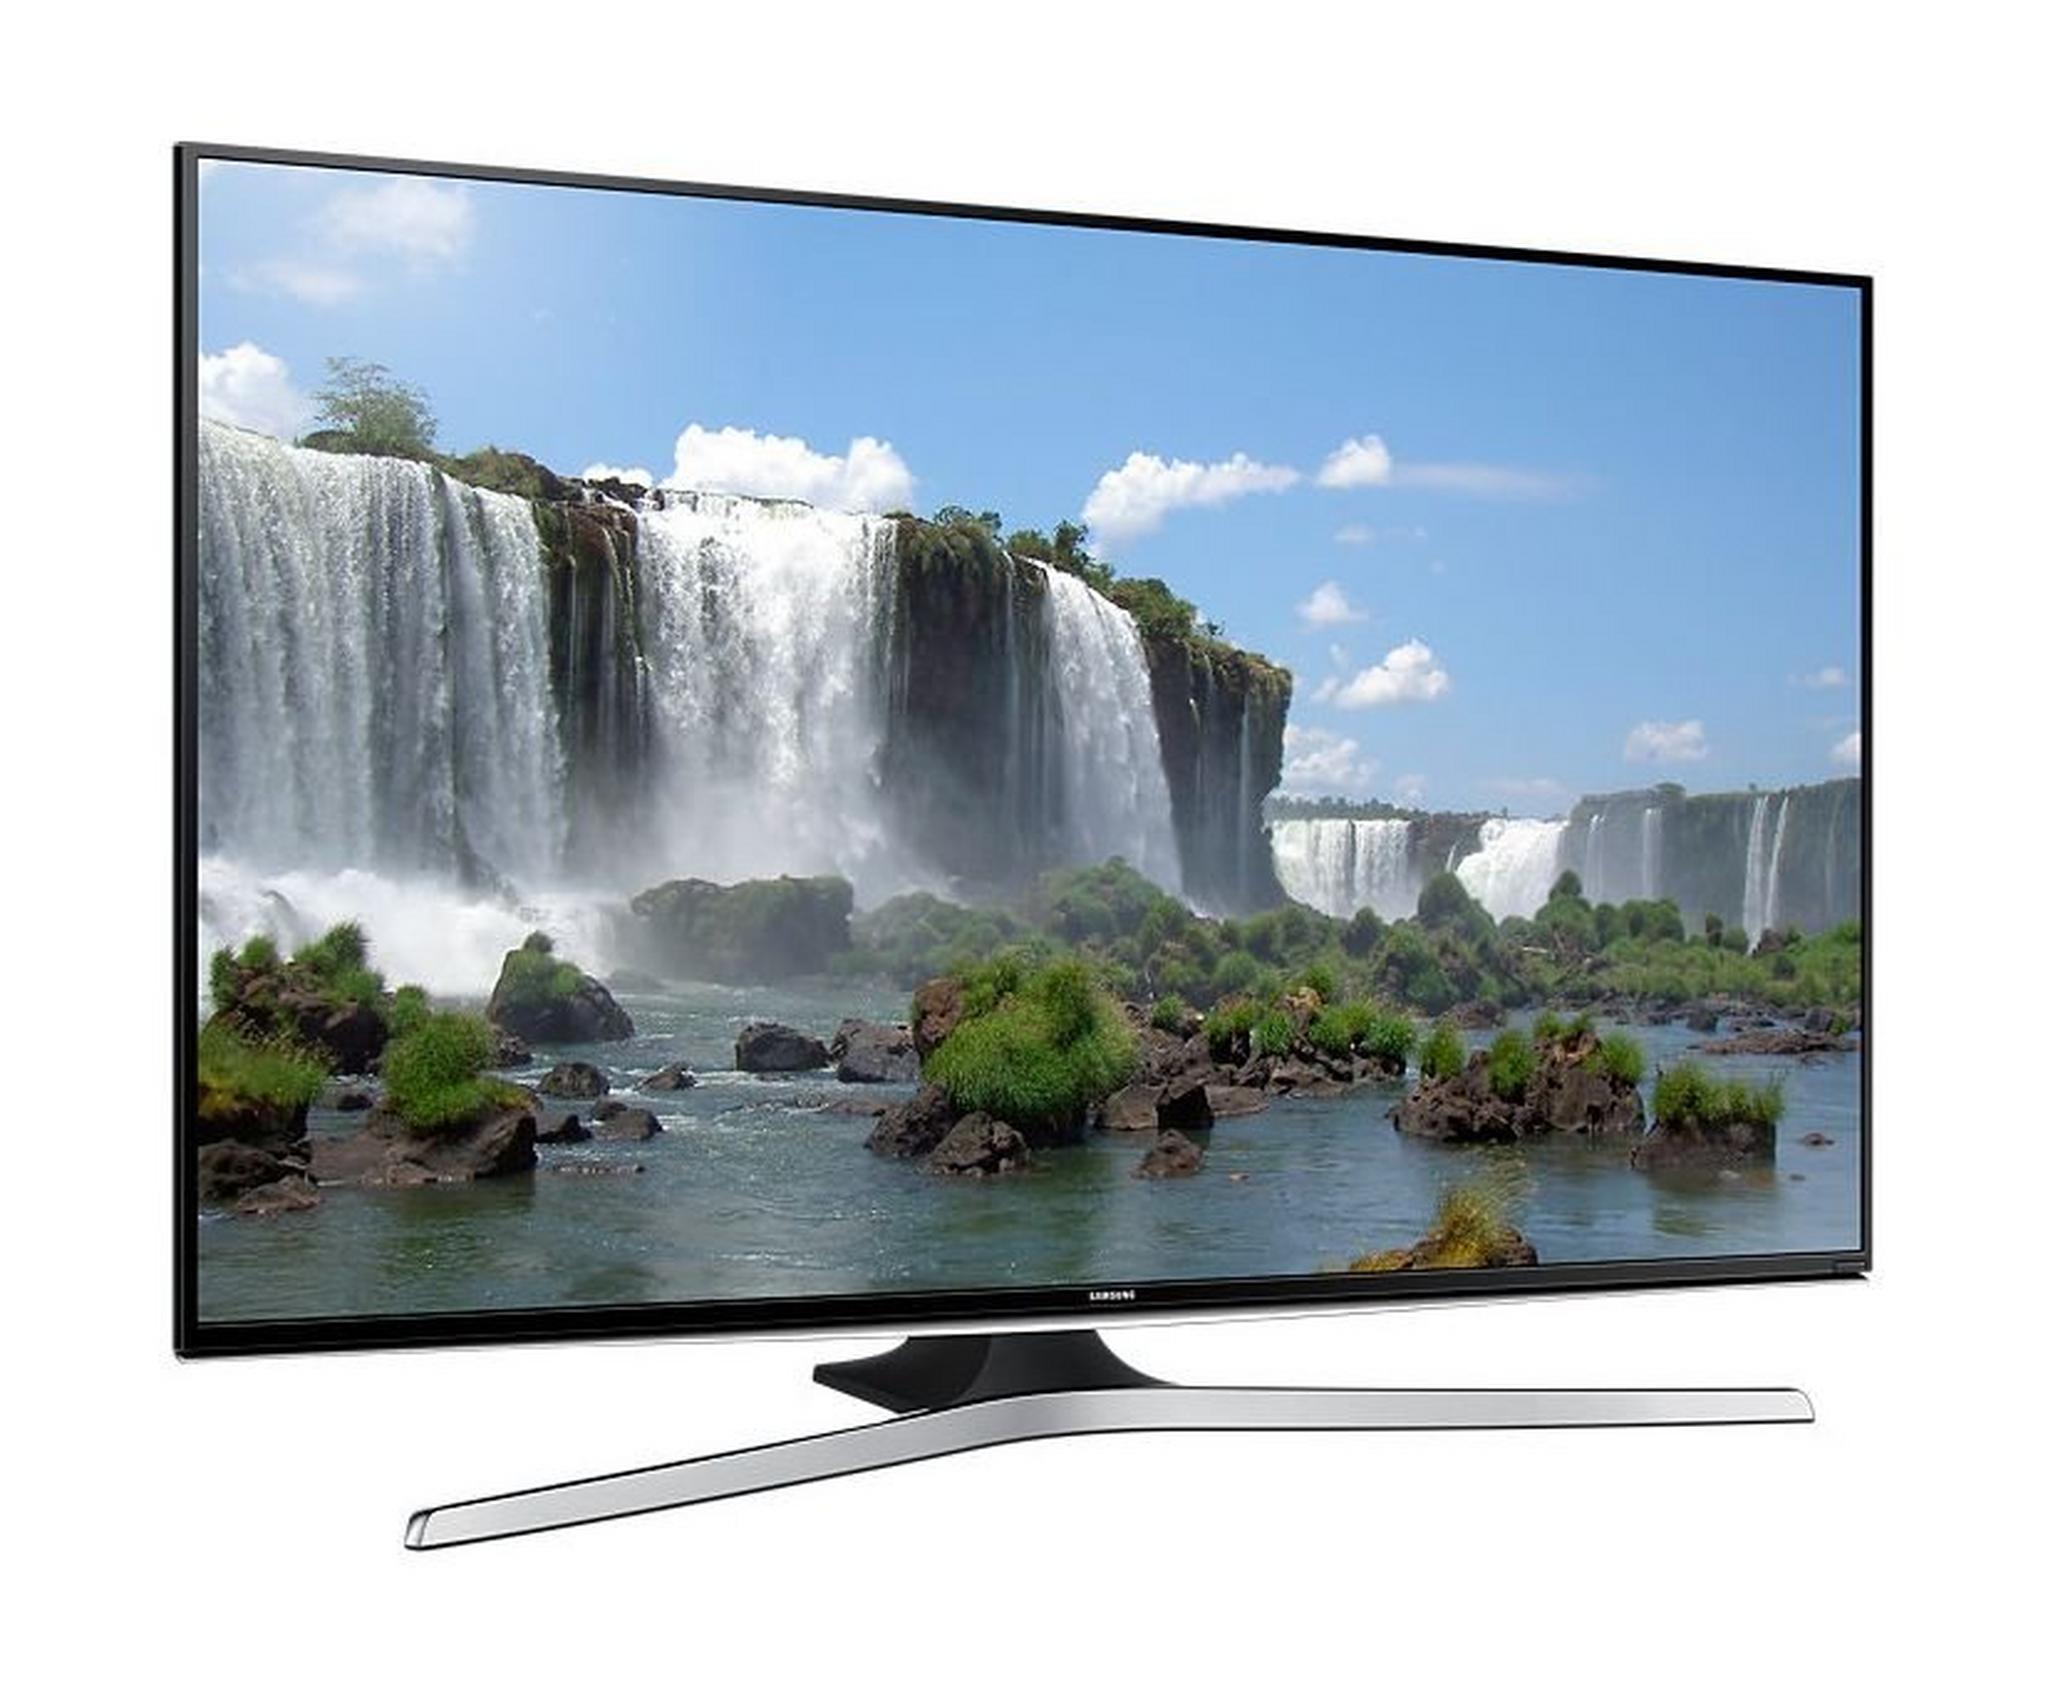 Samsung 55-inch Smart Full HD (1080p) LED TV - UA55J6200A